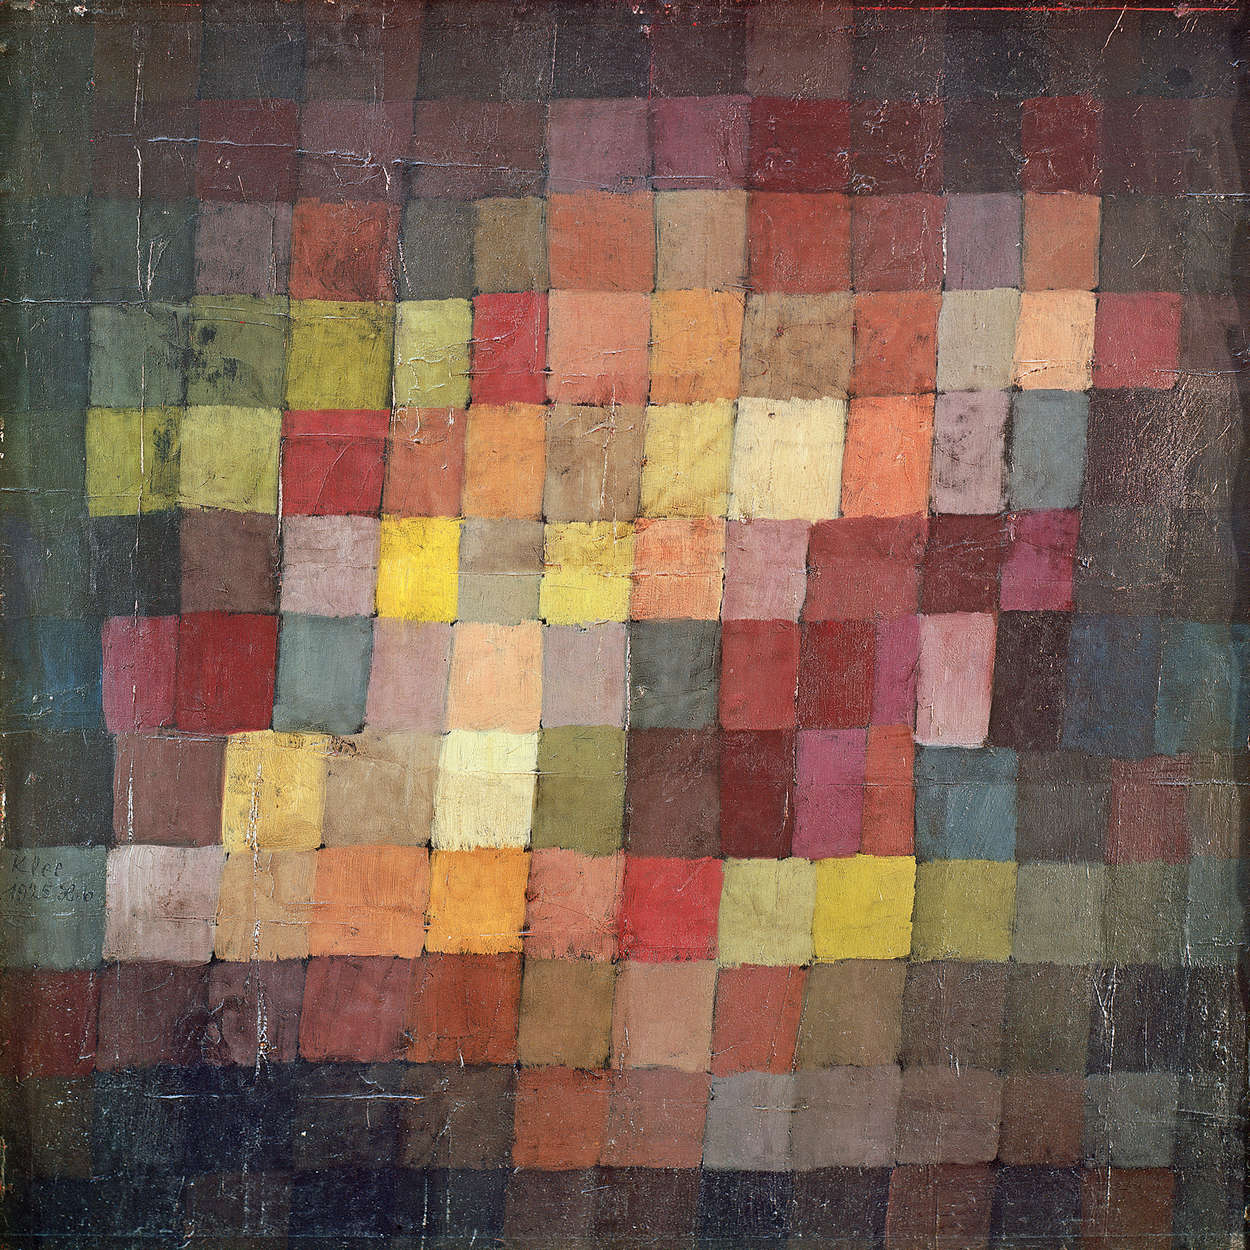             Fototapete "Alte Harmonie" von Paul Klee
        